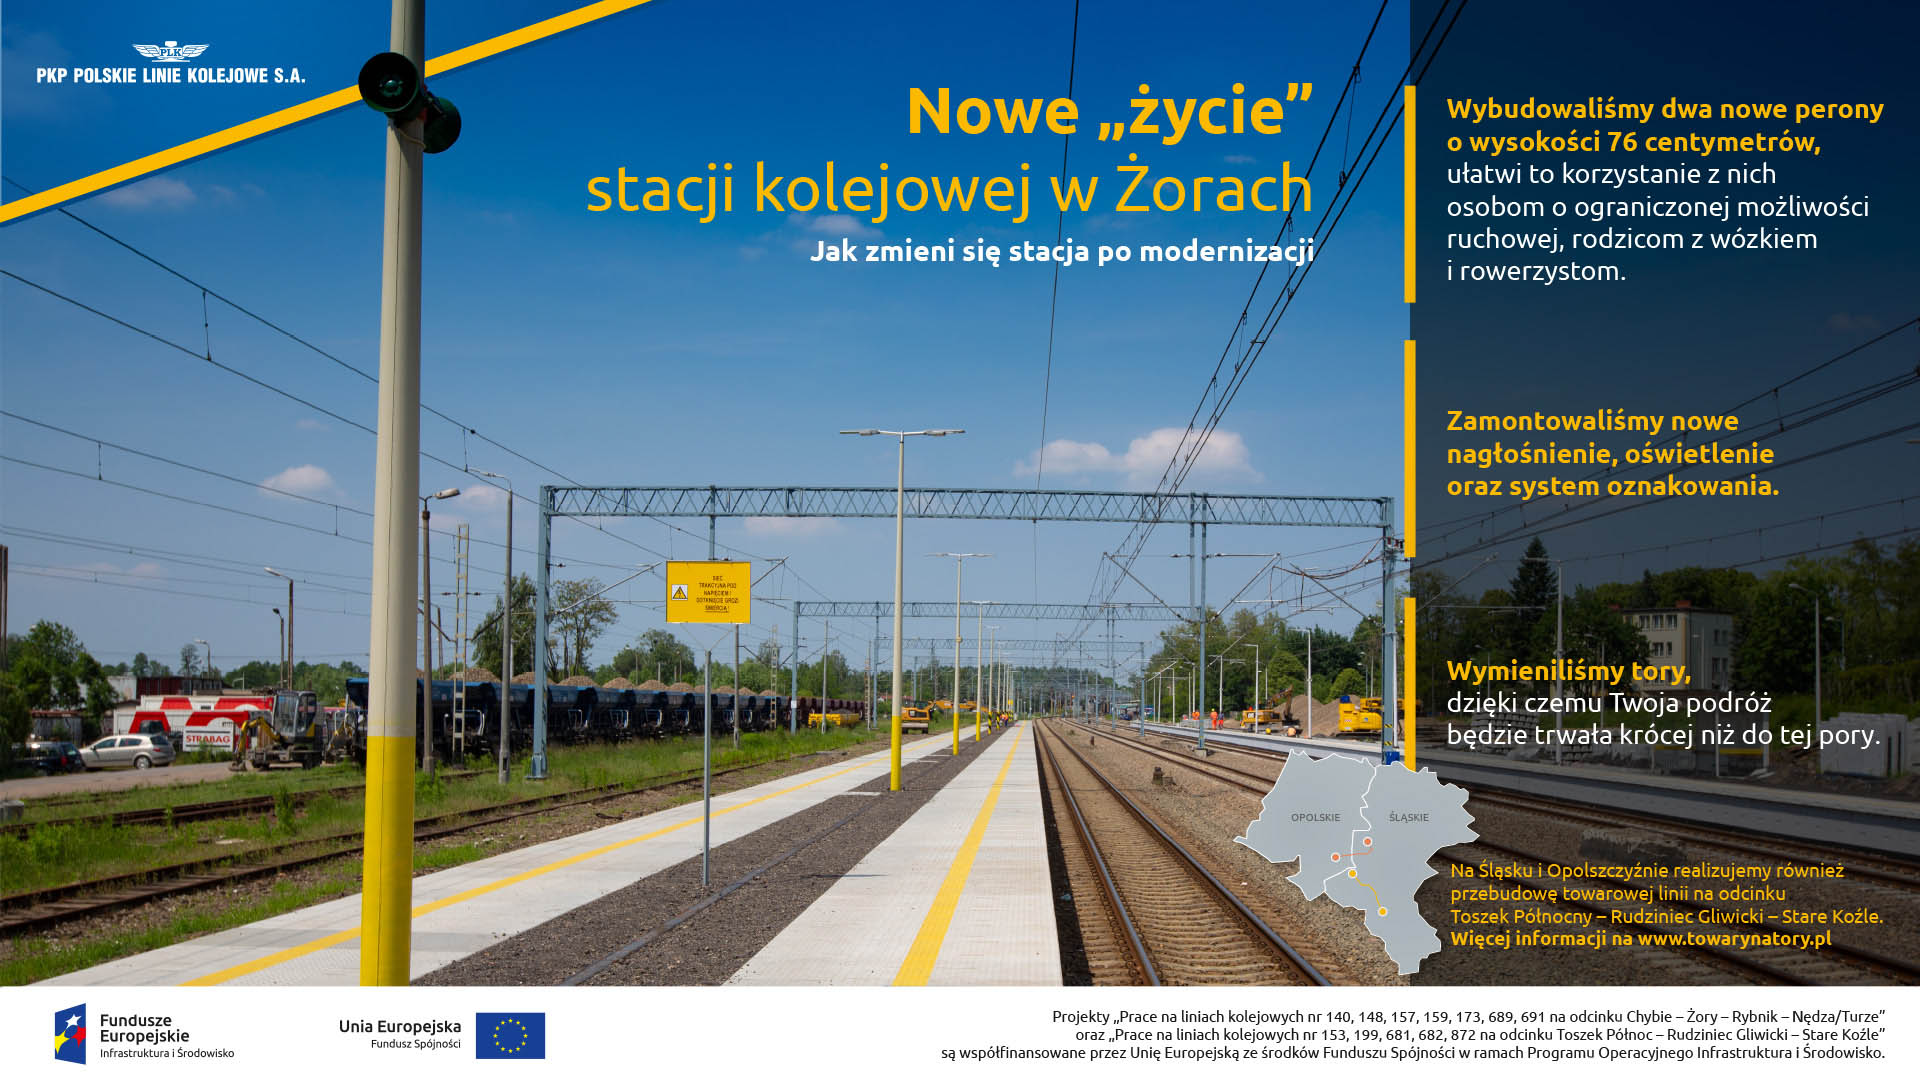 Infografika mówi o zakończeniu remontu w Żorach. Zostały wybudowane dwa nowe perony, zamontowane zostało nowe nagłośnienie oraz wymienione tory.